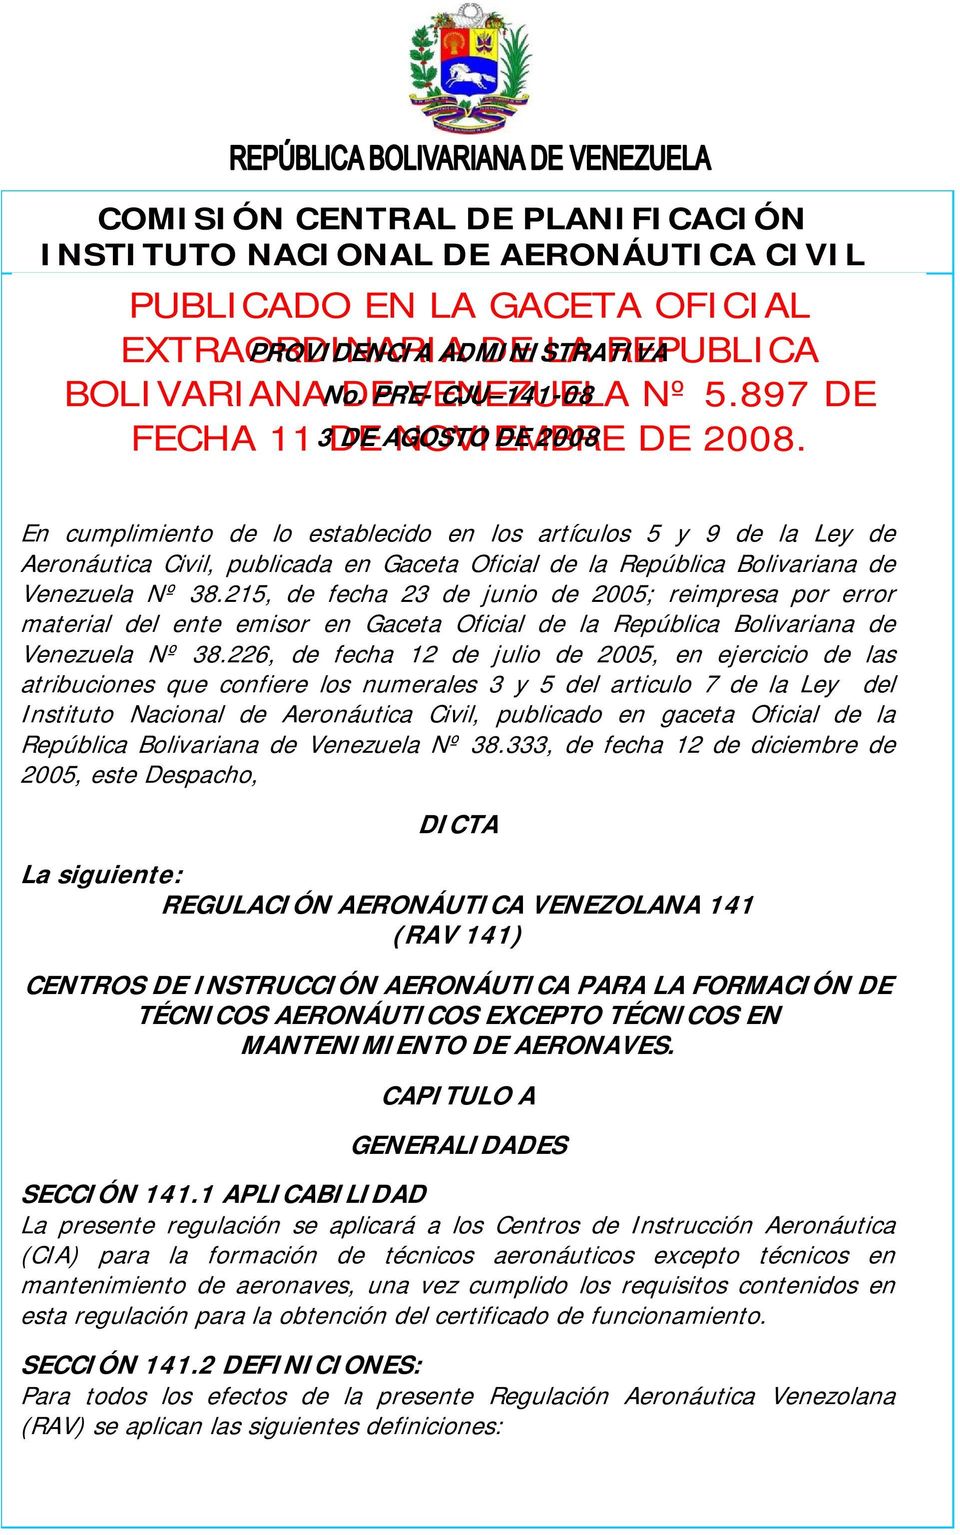 215, de fecha 23 de junio de 2005; reimpresa por error material del ente emisor en Gaceta Oficial de la República Bolivariana de Venezuela Nº 38.